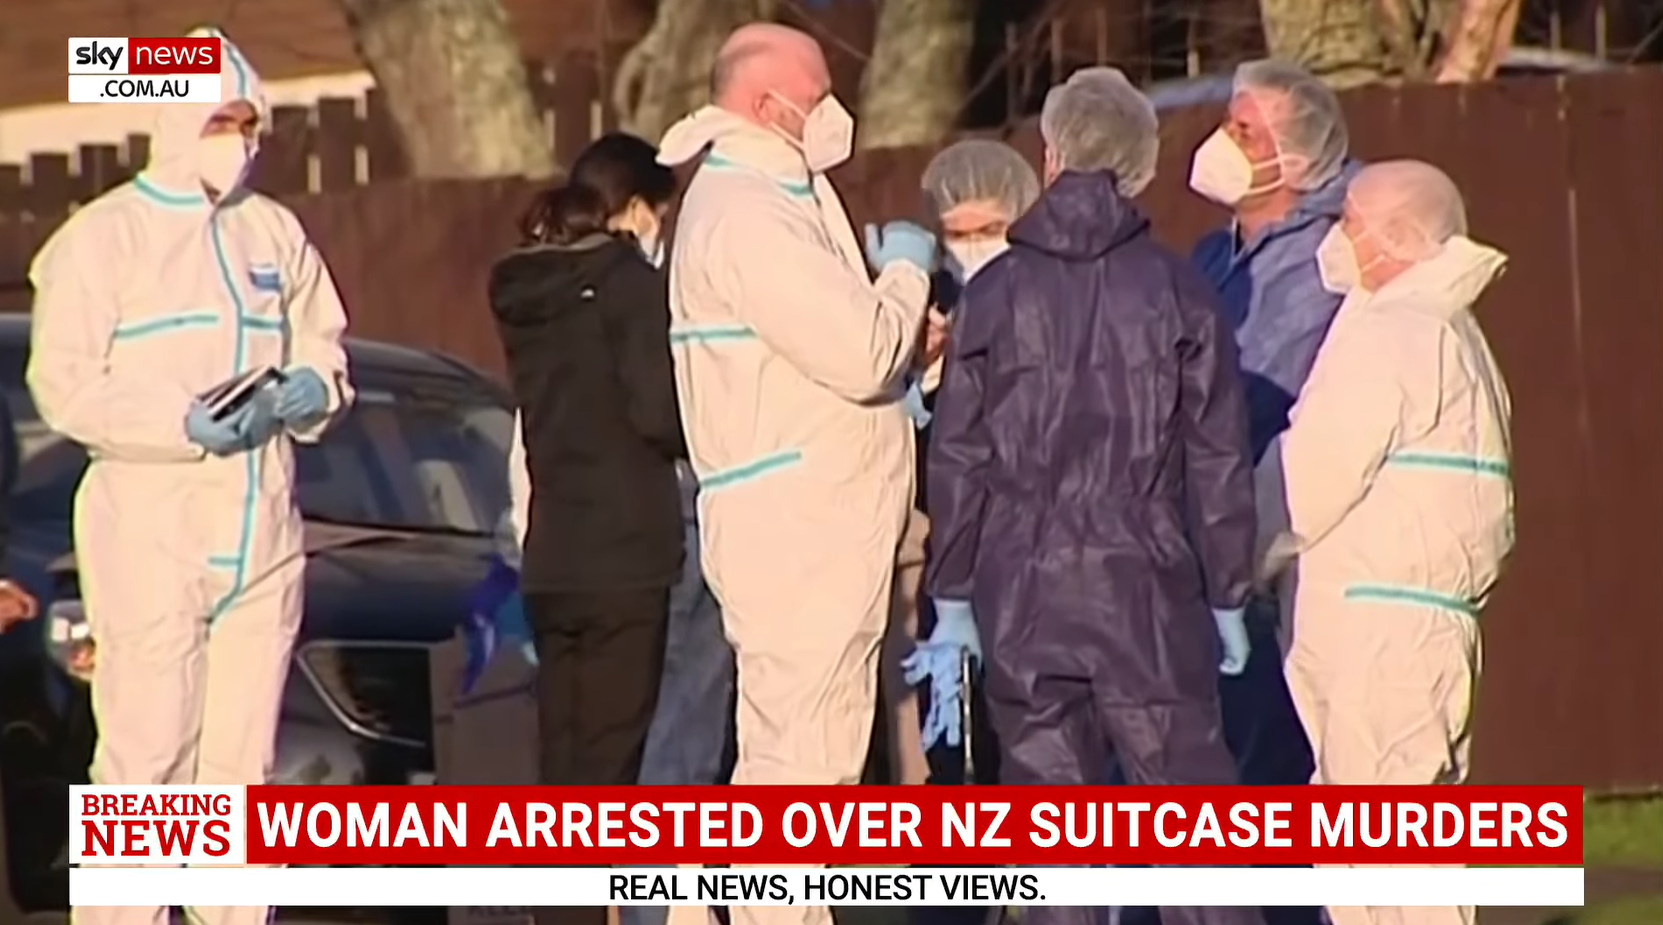 Συνελήφθη γυναίκα για τον φόνο δύο παιδιών που βρέθηκαν σε βαλίτσες στη Νέα Ζηλανδία. Πιστεύουν ότι είναι η μητέρα τους